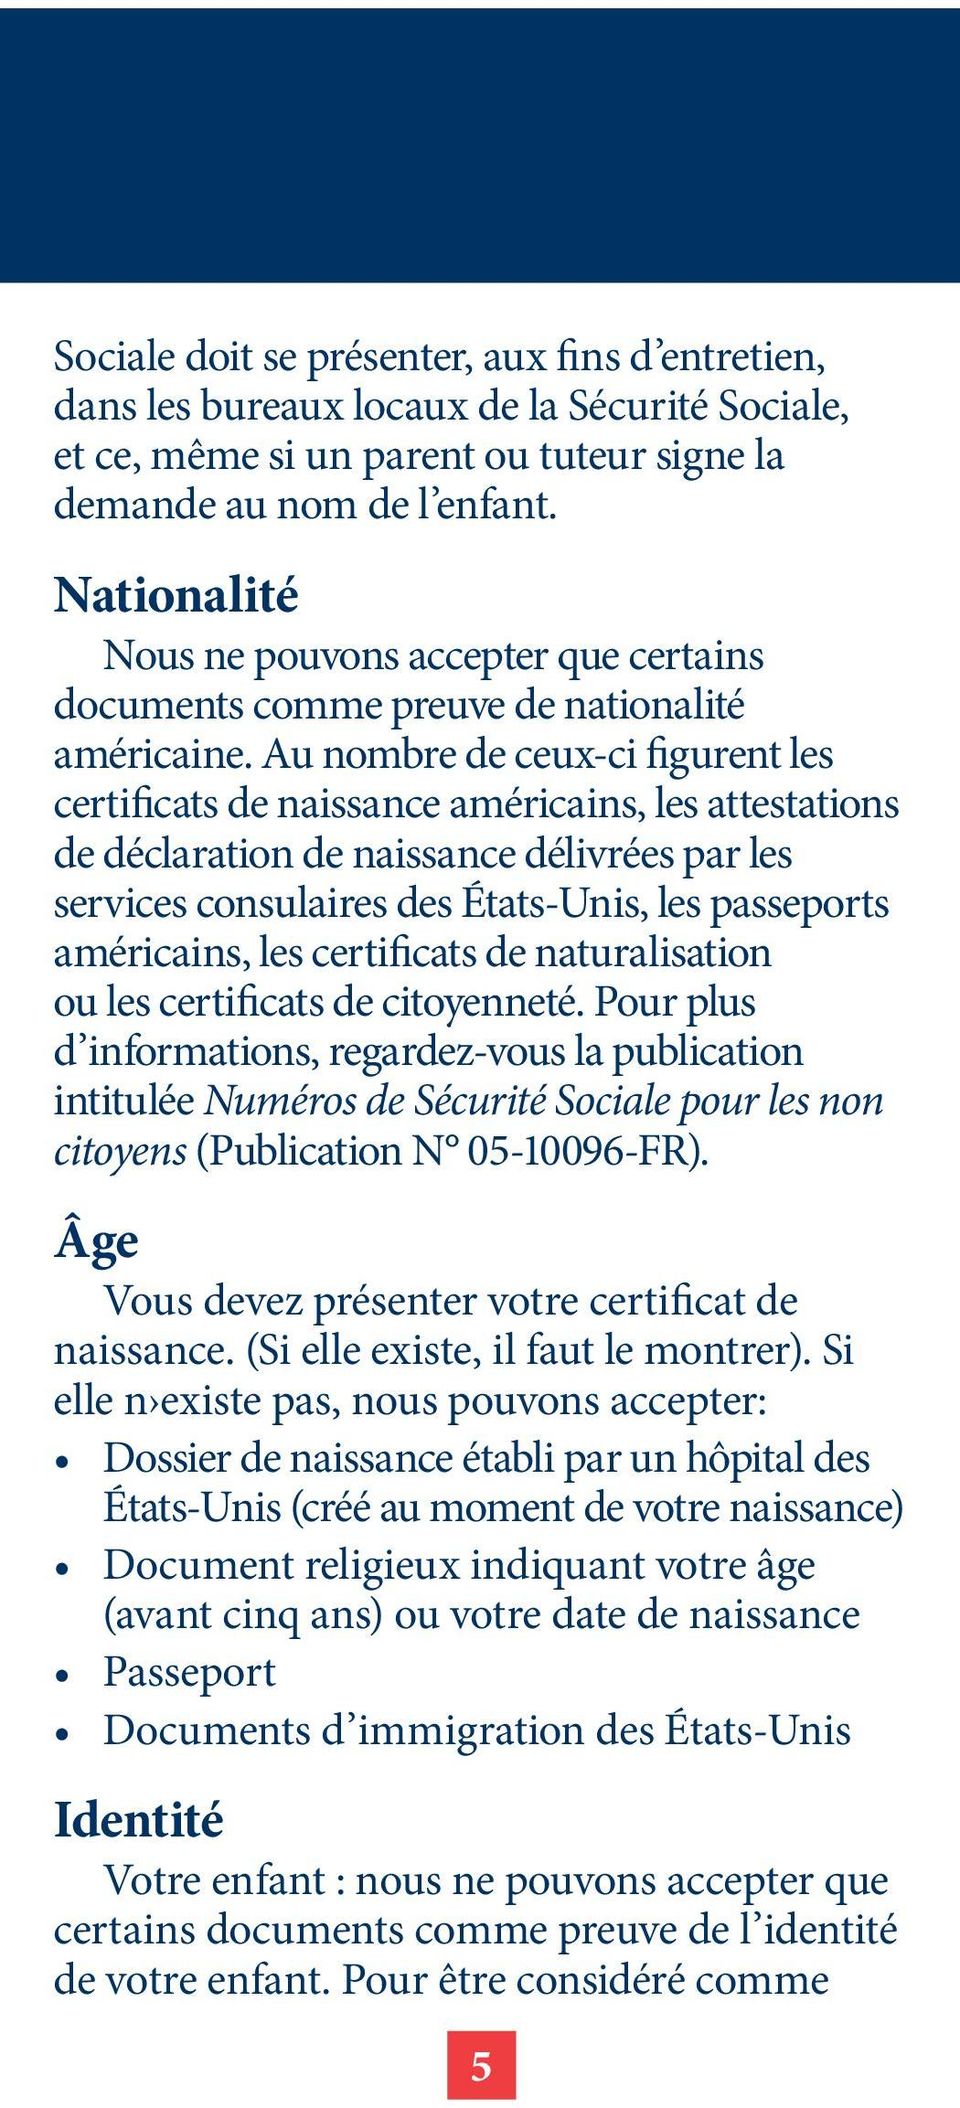 Au nombre de ceux-ci figurent les certificats de naissance américains, les attestations de déclaration de naissance délivrées par les services consulaires des États-Unis, les passeports américains,